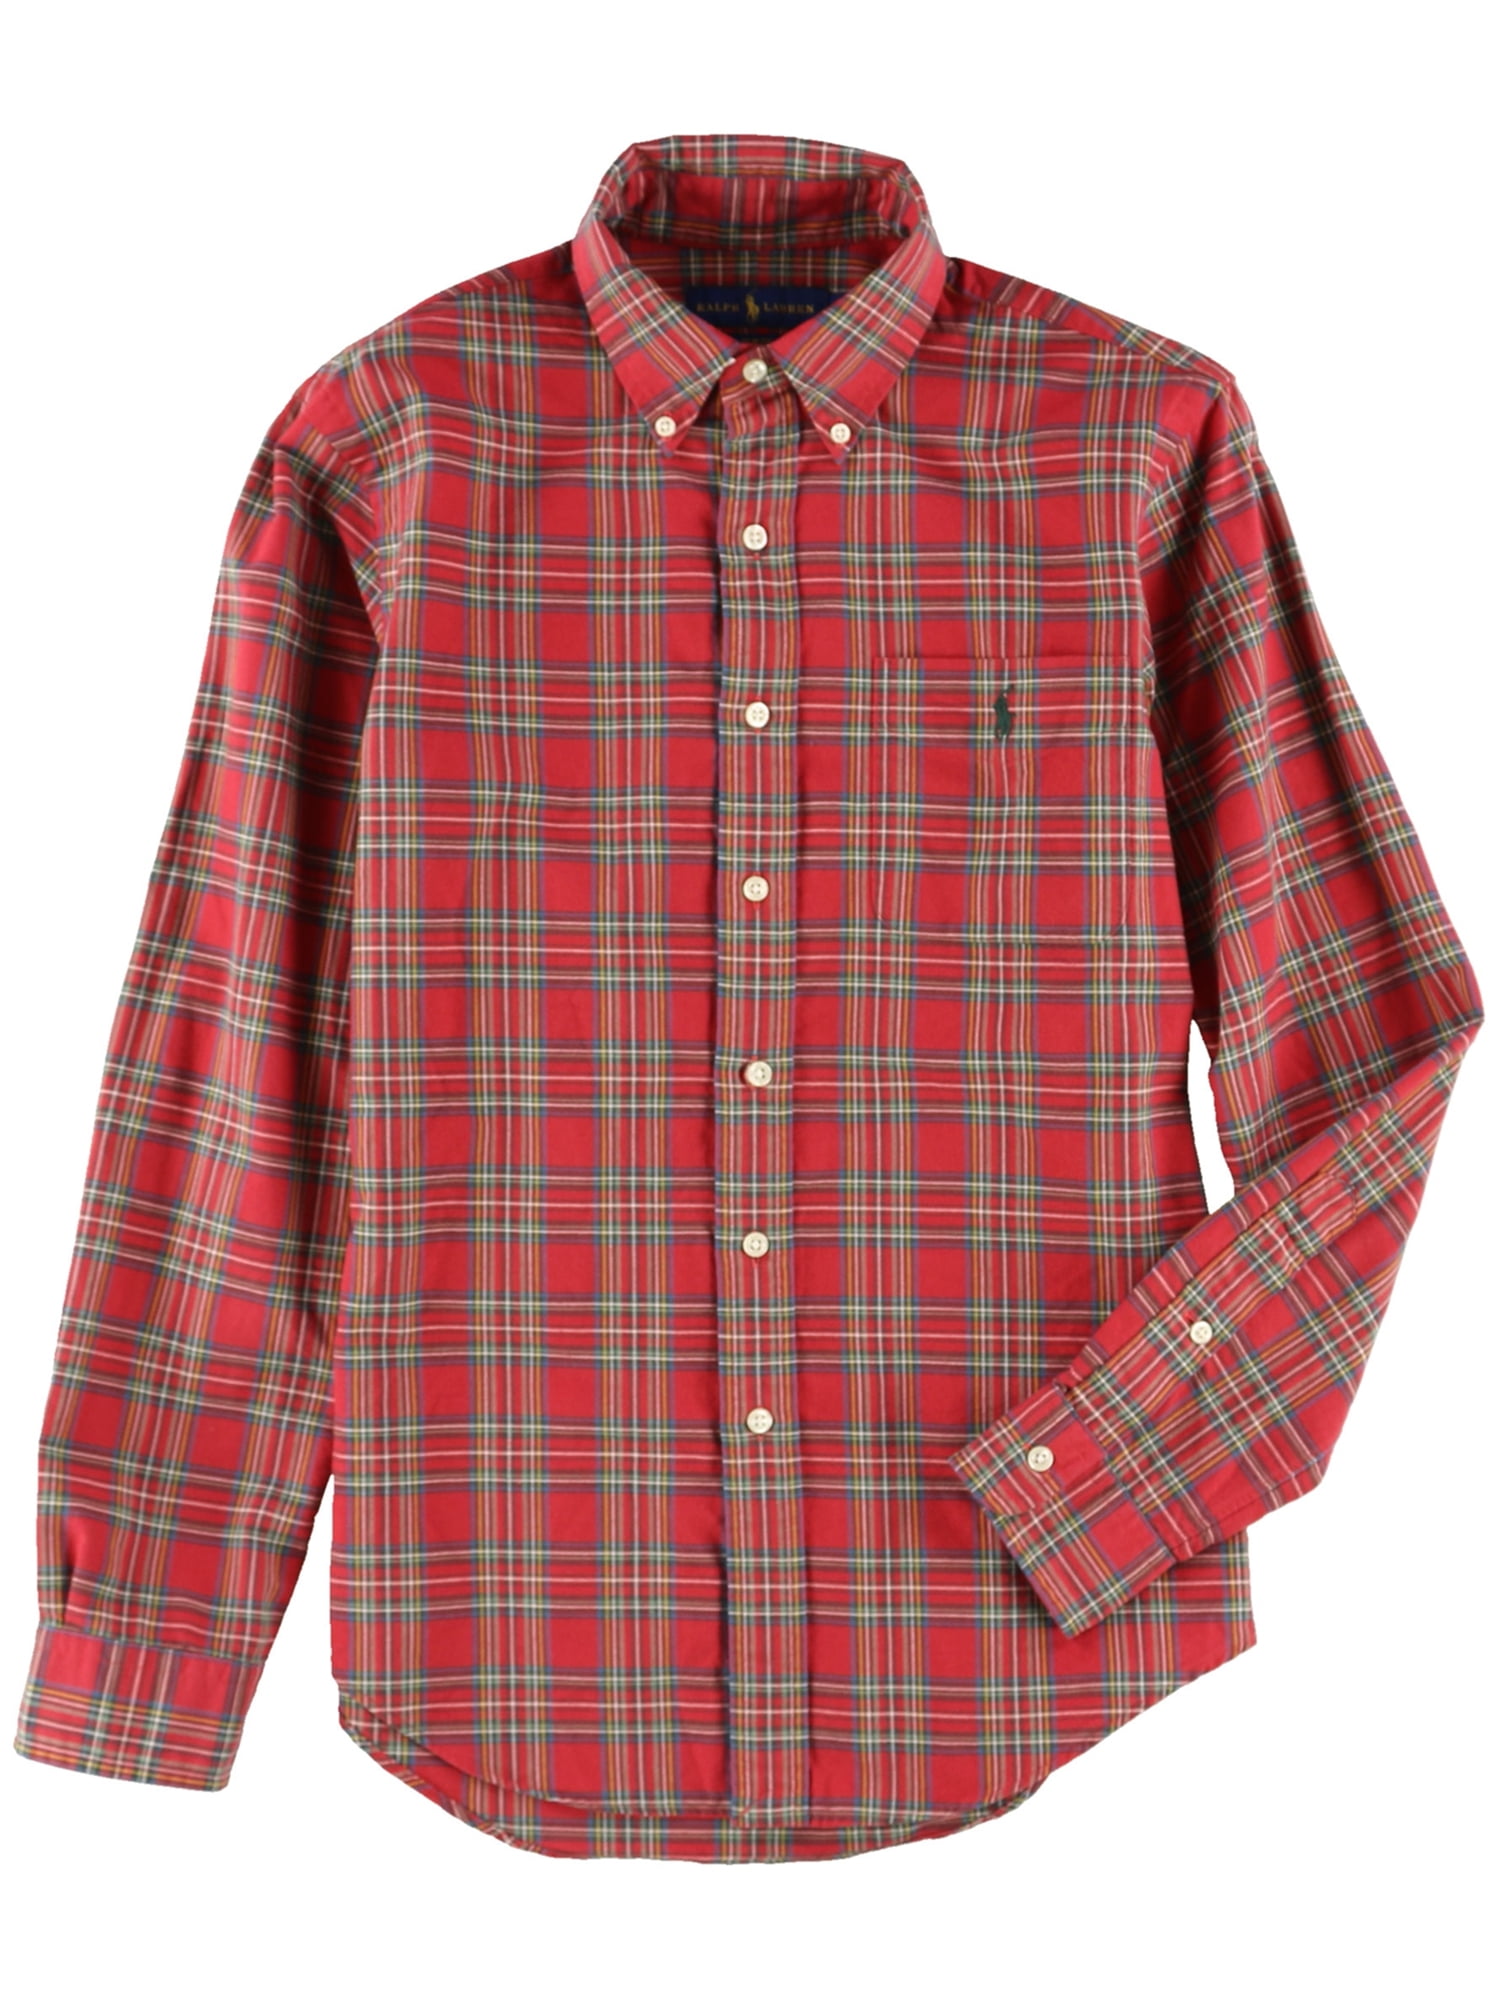 men's polo ralph lauren button down shirts on sale